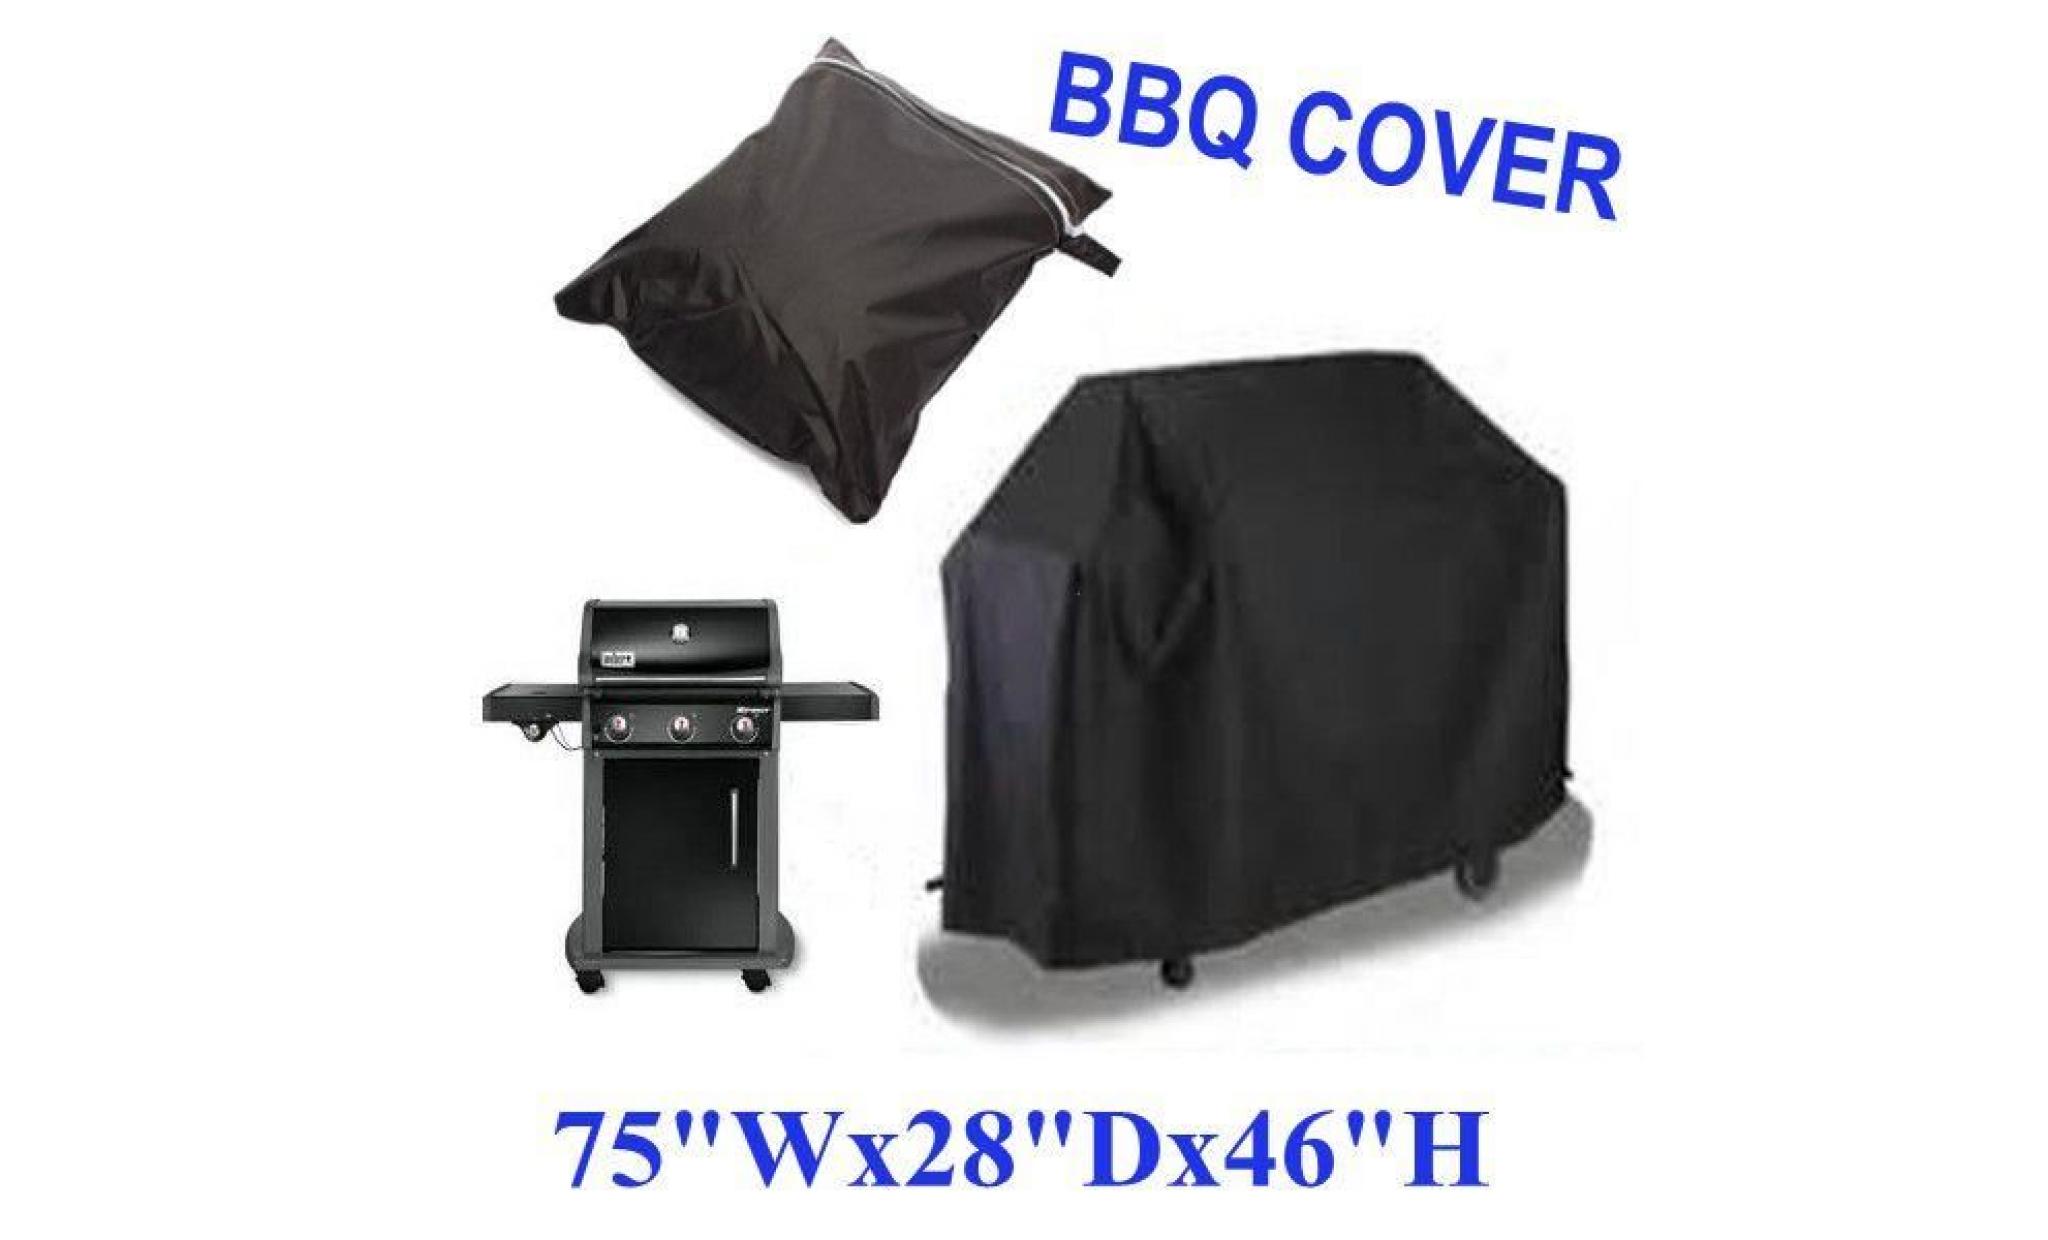 neufu housse de protection pour bbq cover grill extérieur anti pluie etanche 190x71x117cm